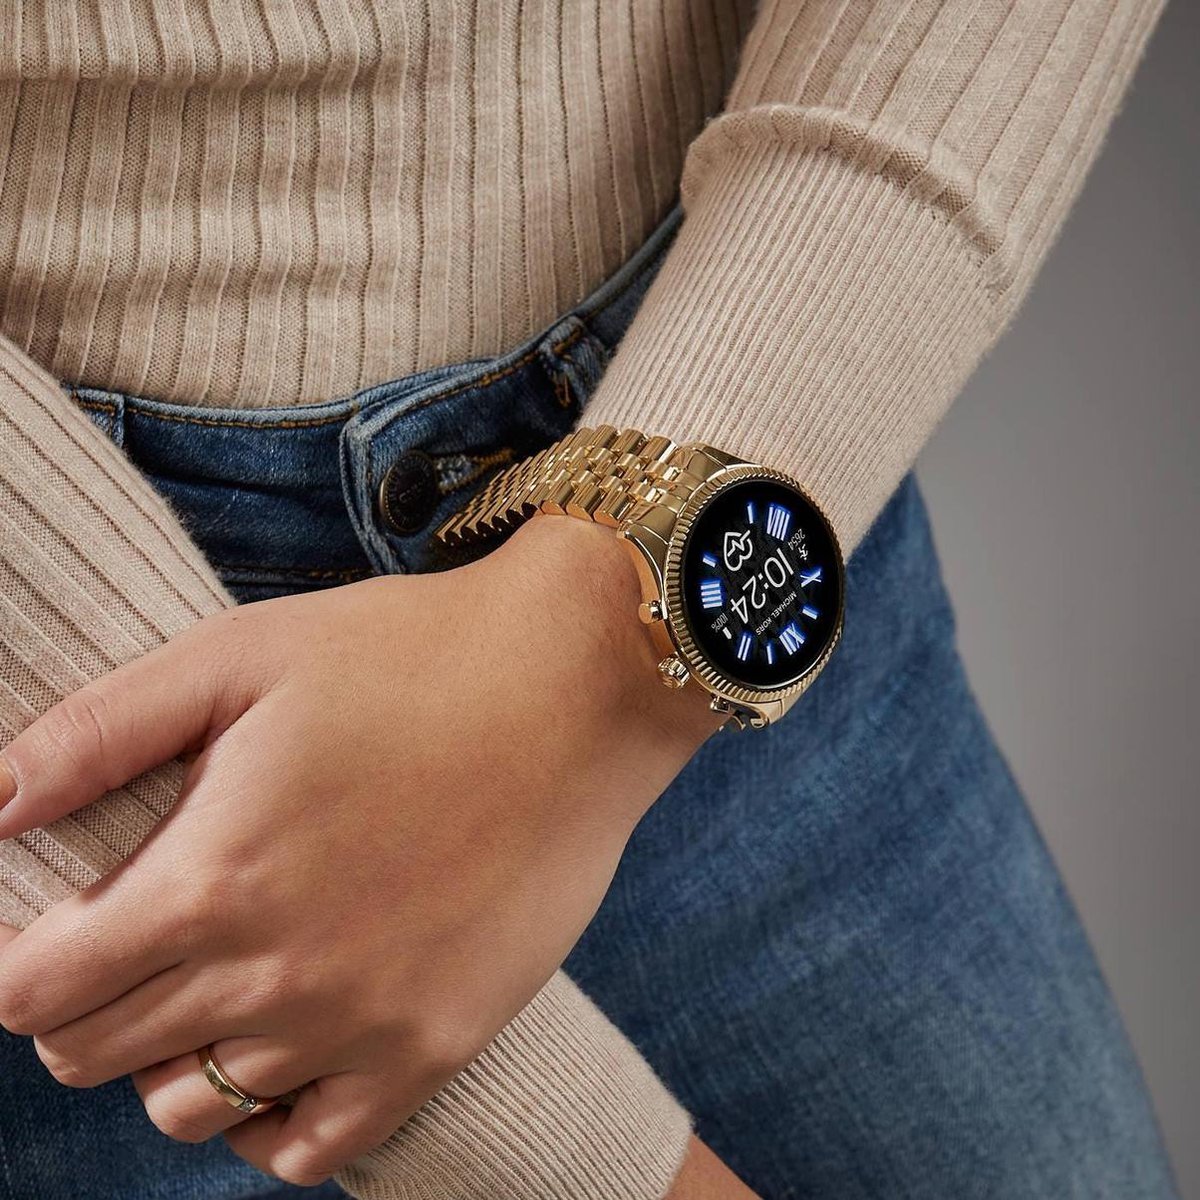  Michael Kors Access smartwatch  Smartwatches  Marktplaats